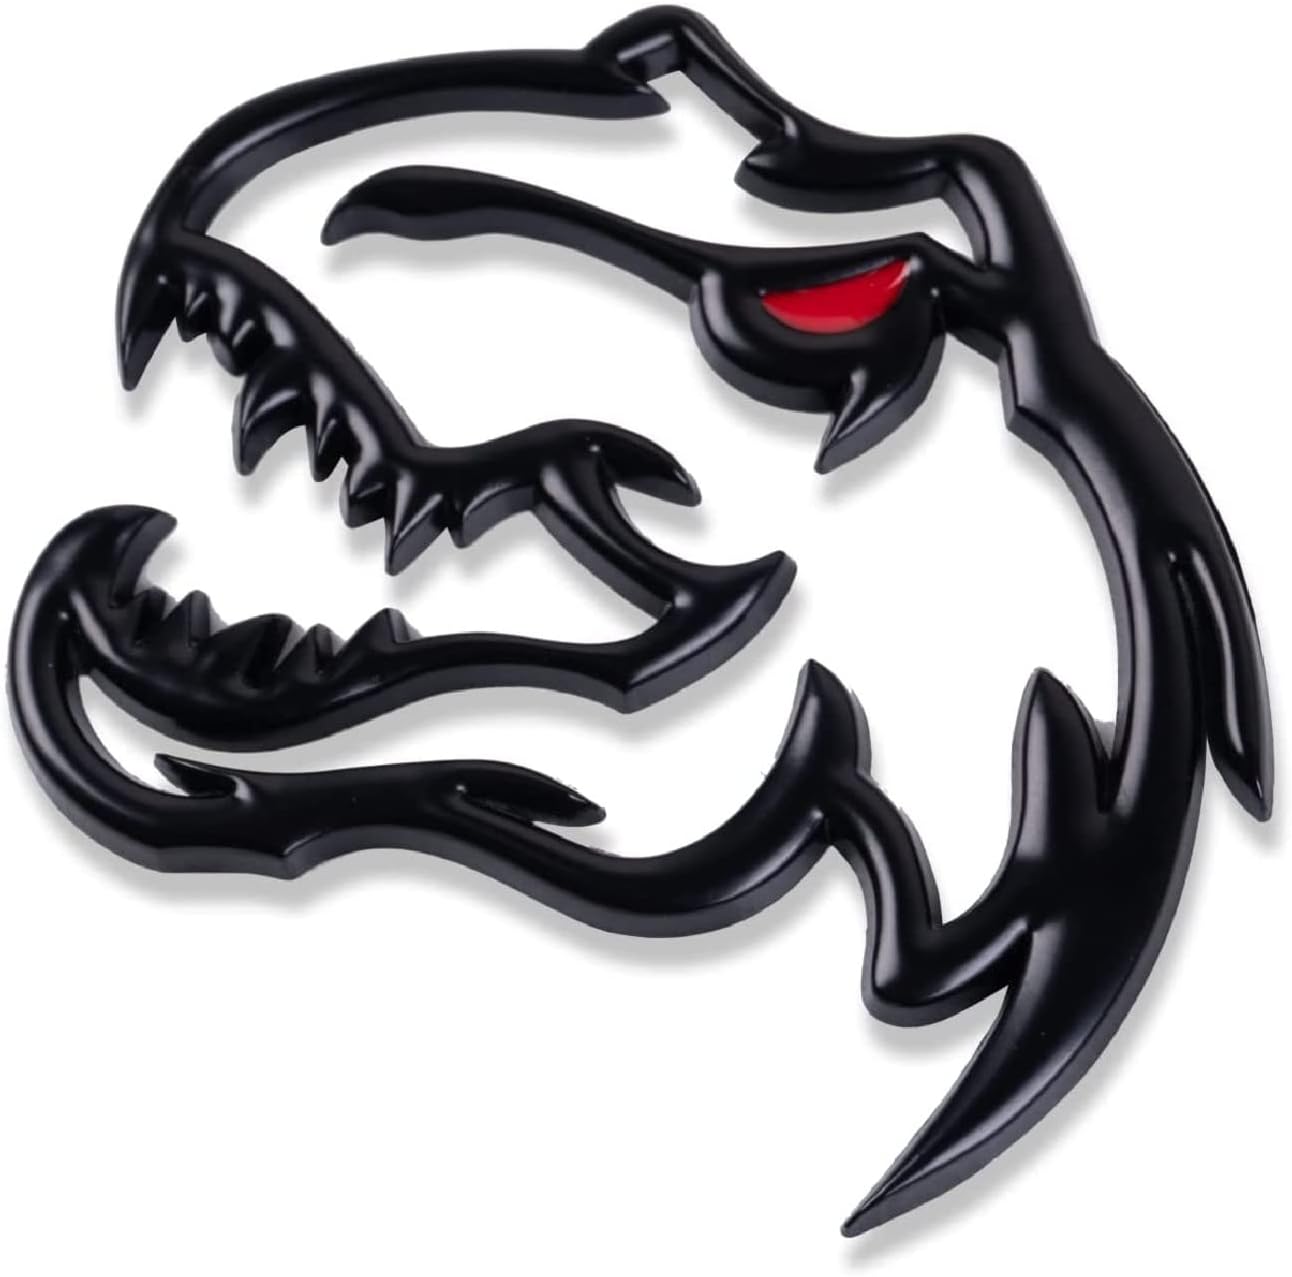 Black Panther Tesla Emblem Decals (Front + Back) – Tesla Emblems